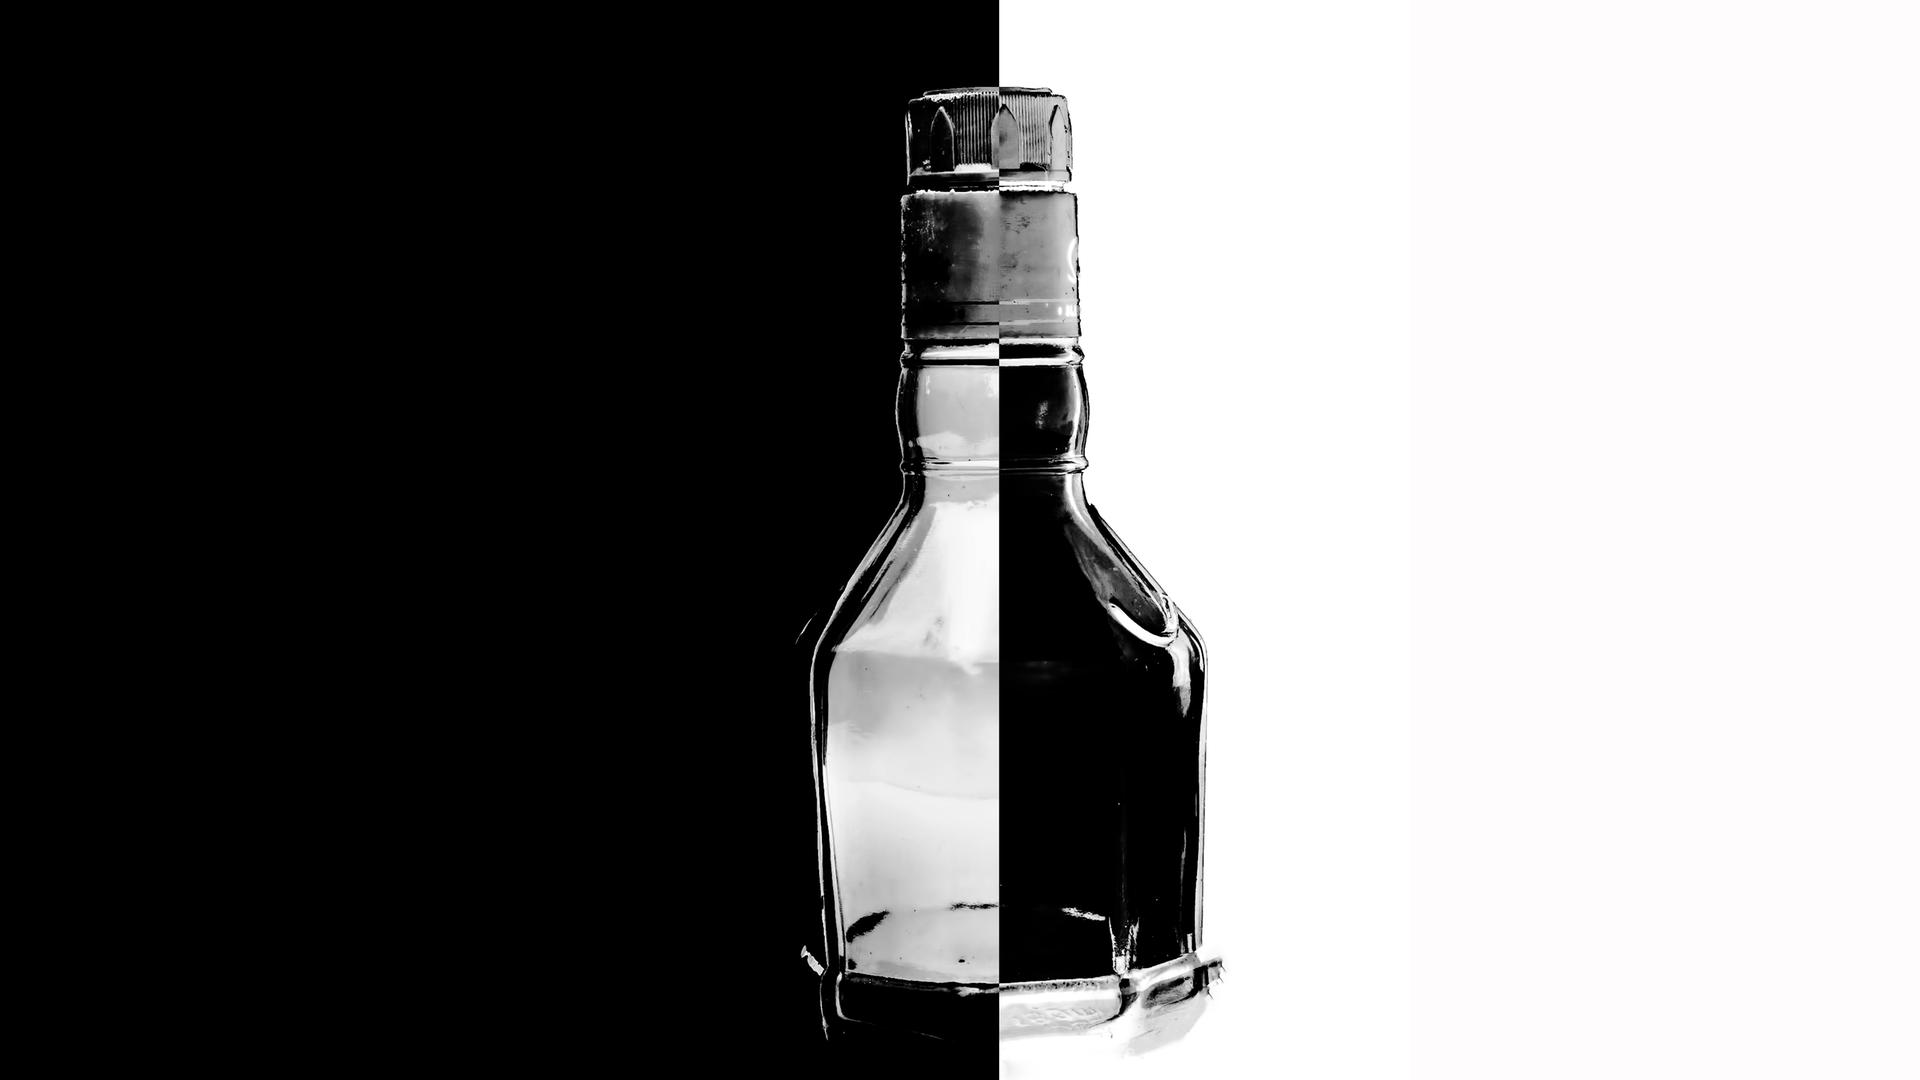 Nahaufnahme eines Glasflakons vor schwarz-weißem Hintergrund. Im Inneren der Flasche sind die Seiten vertauscht: schwarz auf weiß und weiß auf schwarz.